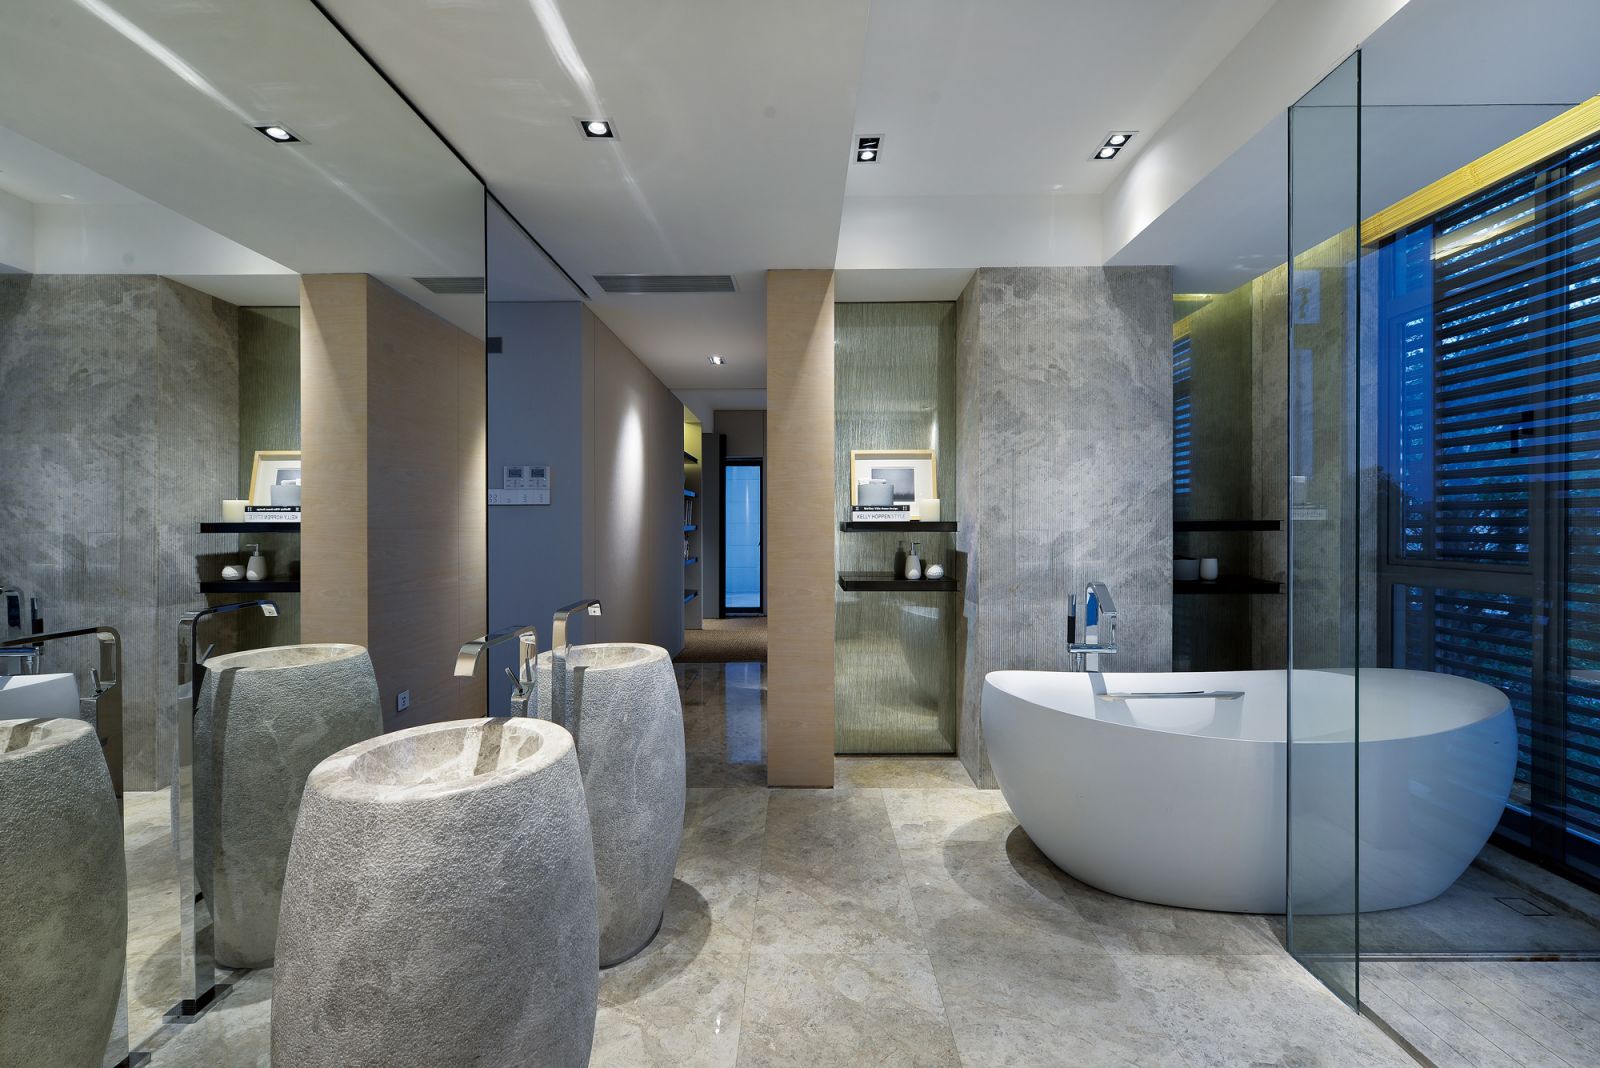 大理石赋予卫浴空间高级感，空间兼具浴缸和淋浴房，凸显主人对品质生活的追求。